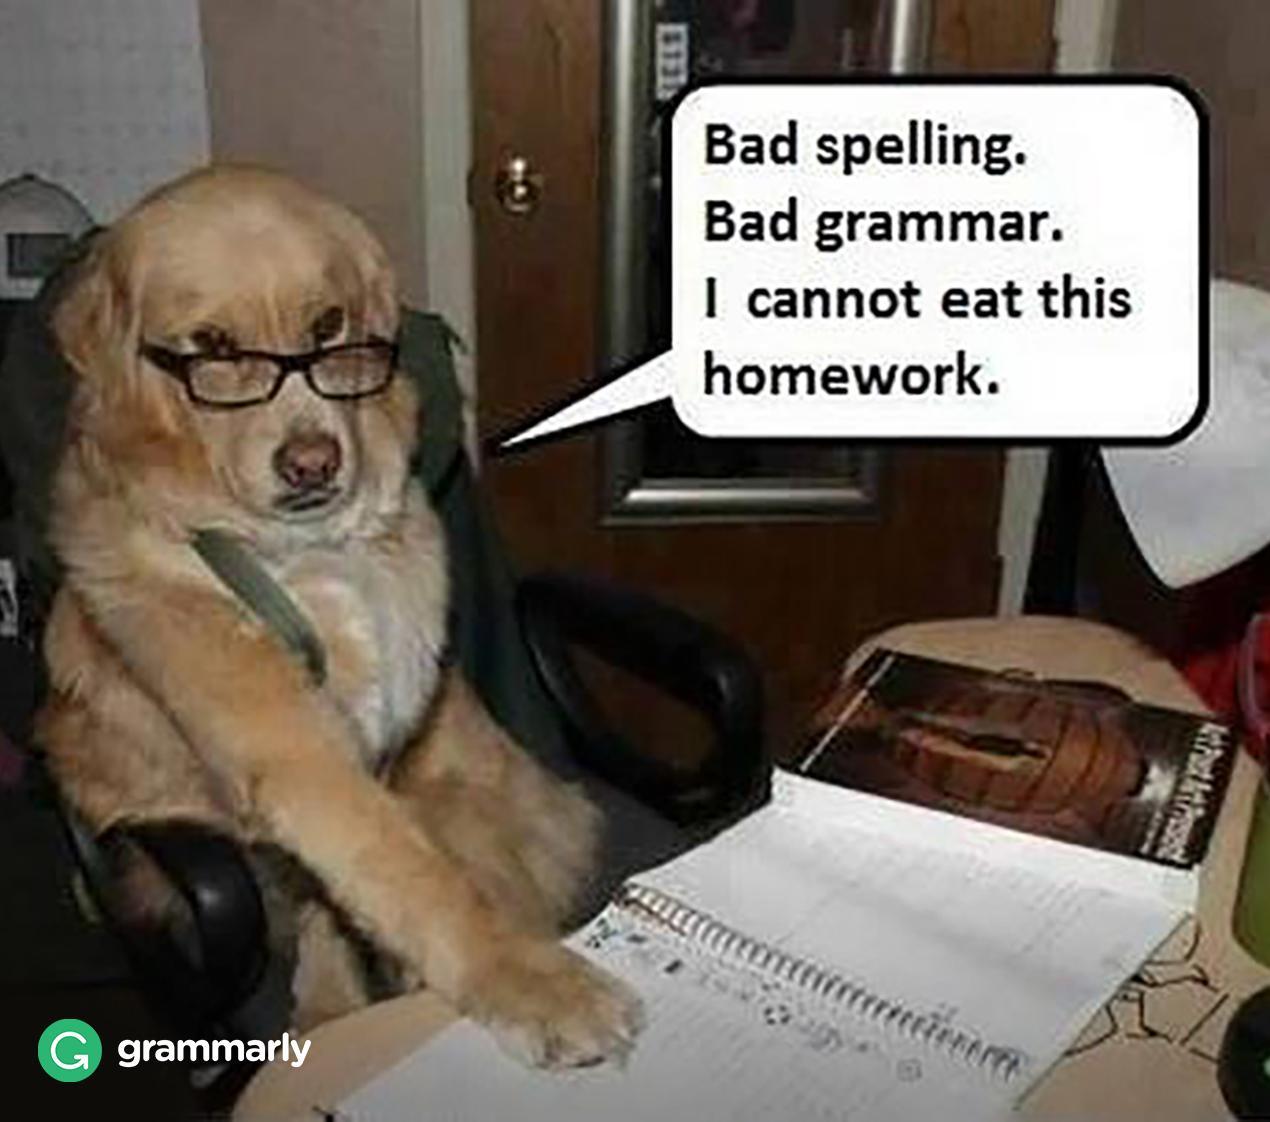 Grammarly on Twitter: "Grammar dog is harsh!…